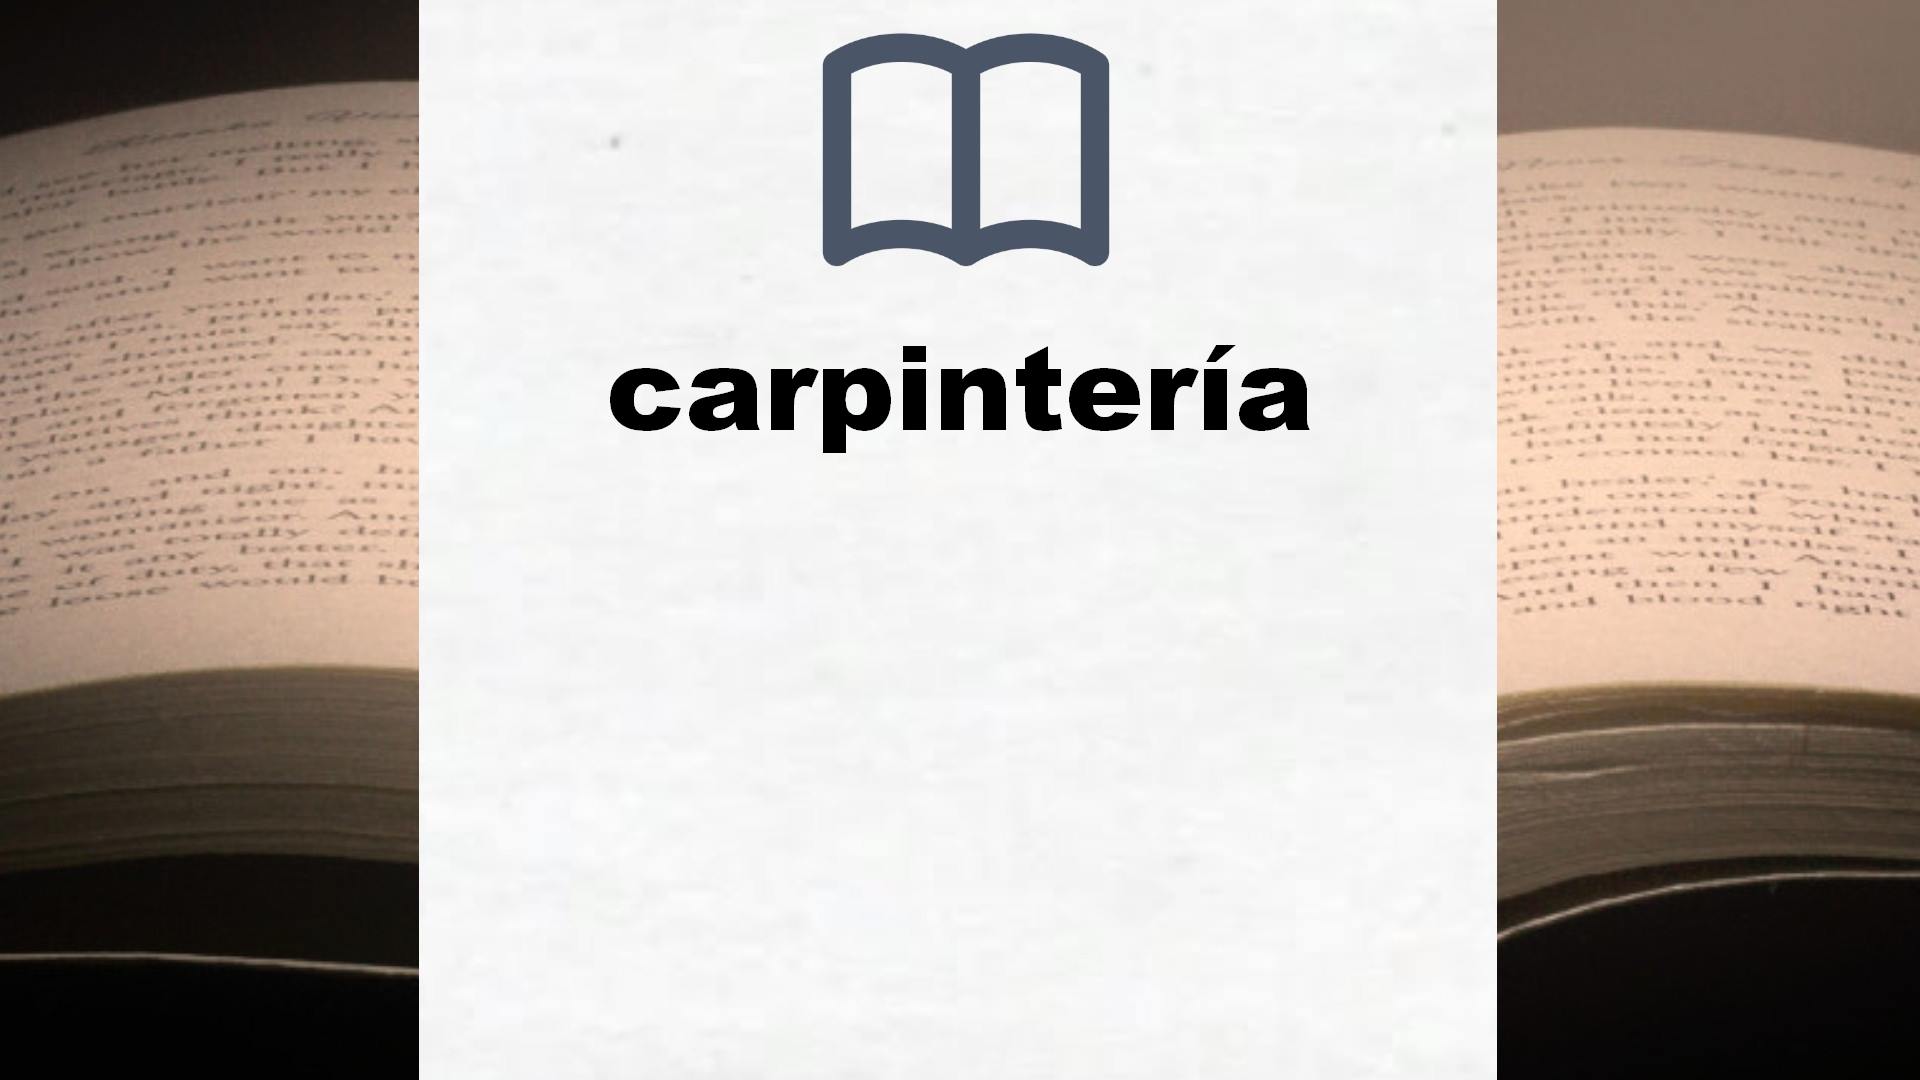 Libros sobre carpintería